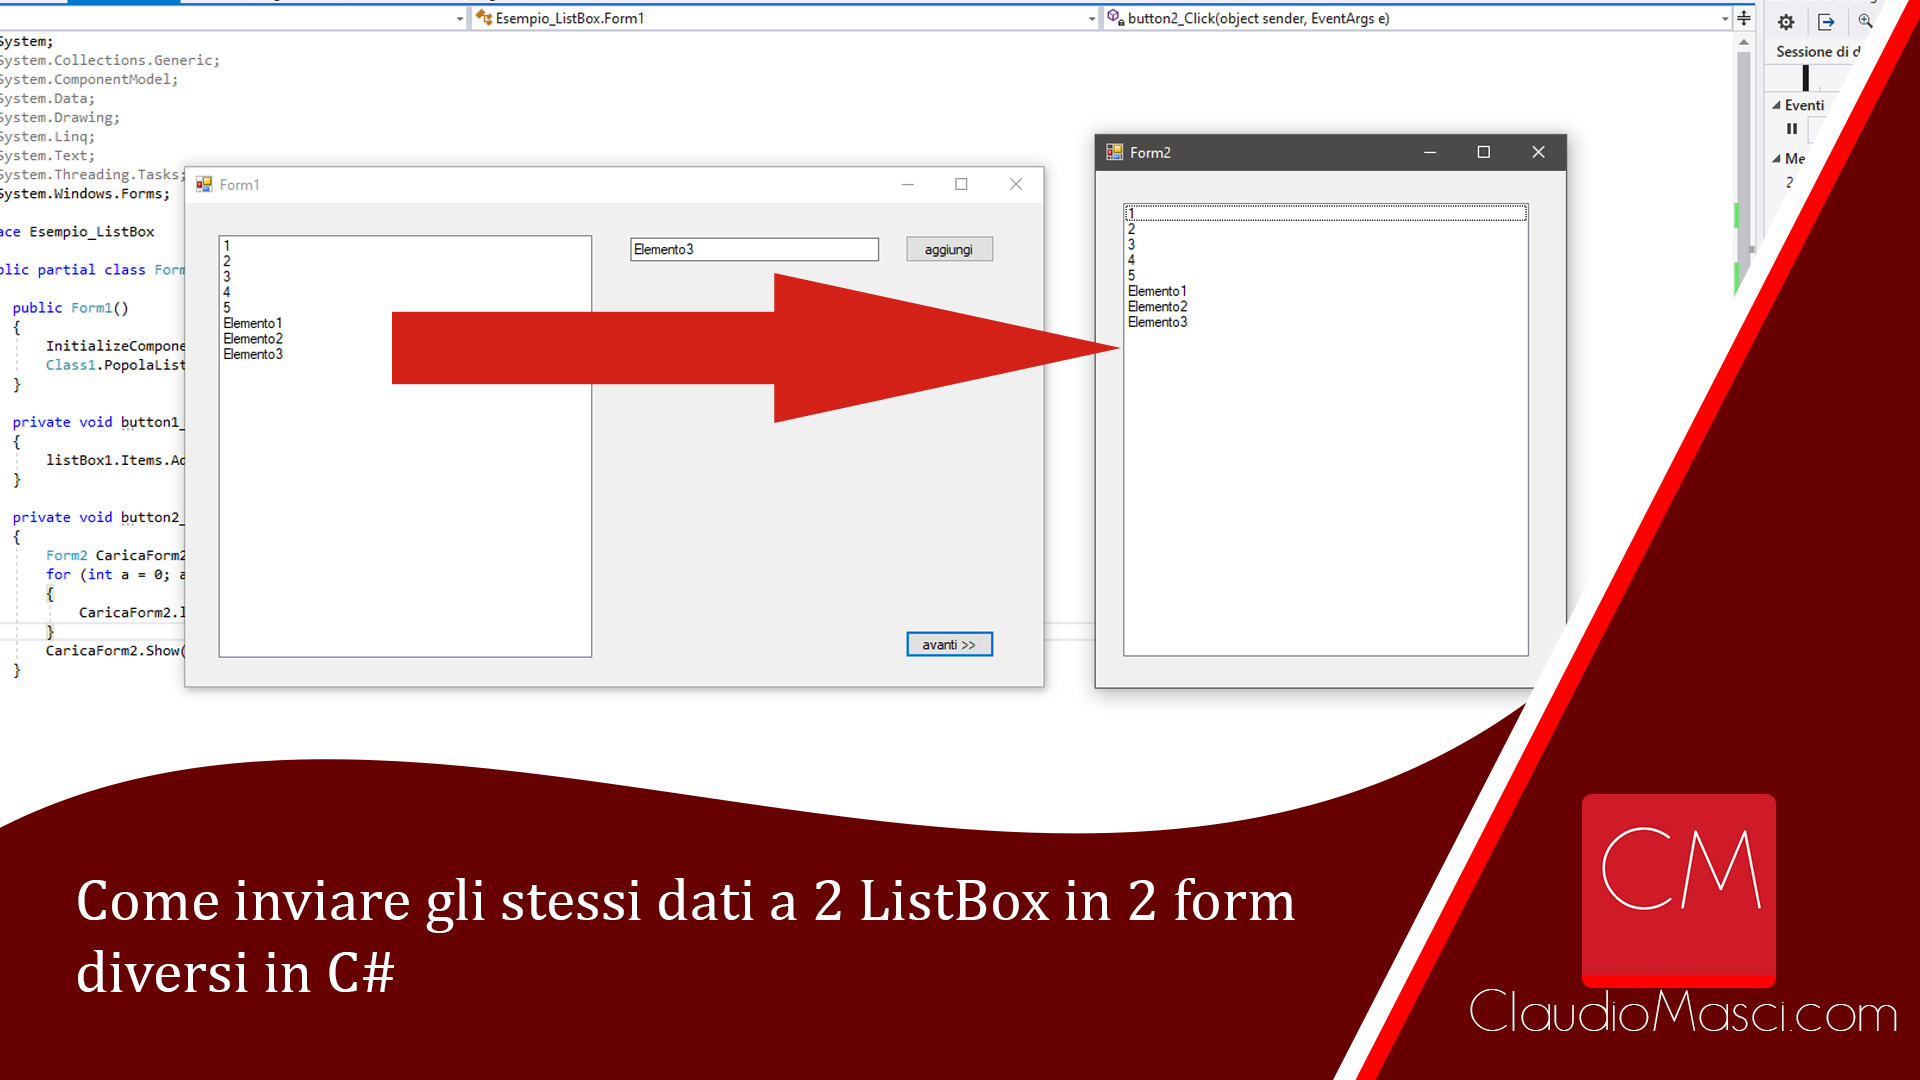 Come inviare gli stessi dati a 2 ListBox in 2 form diversi in C#